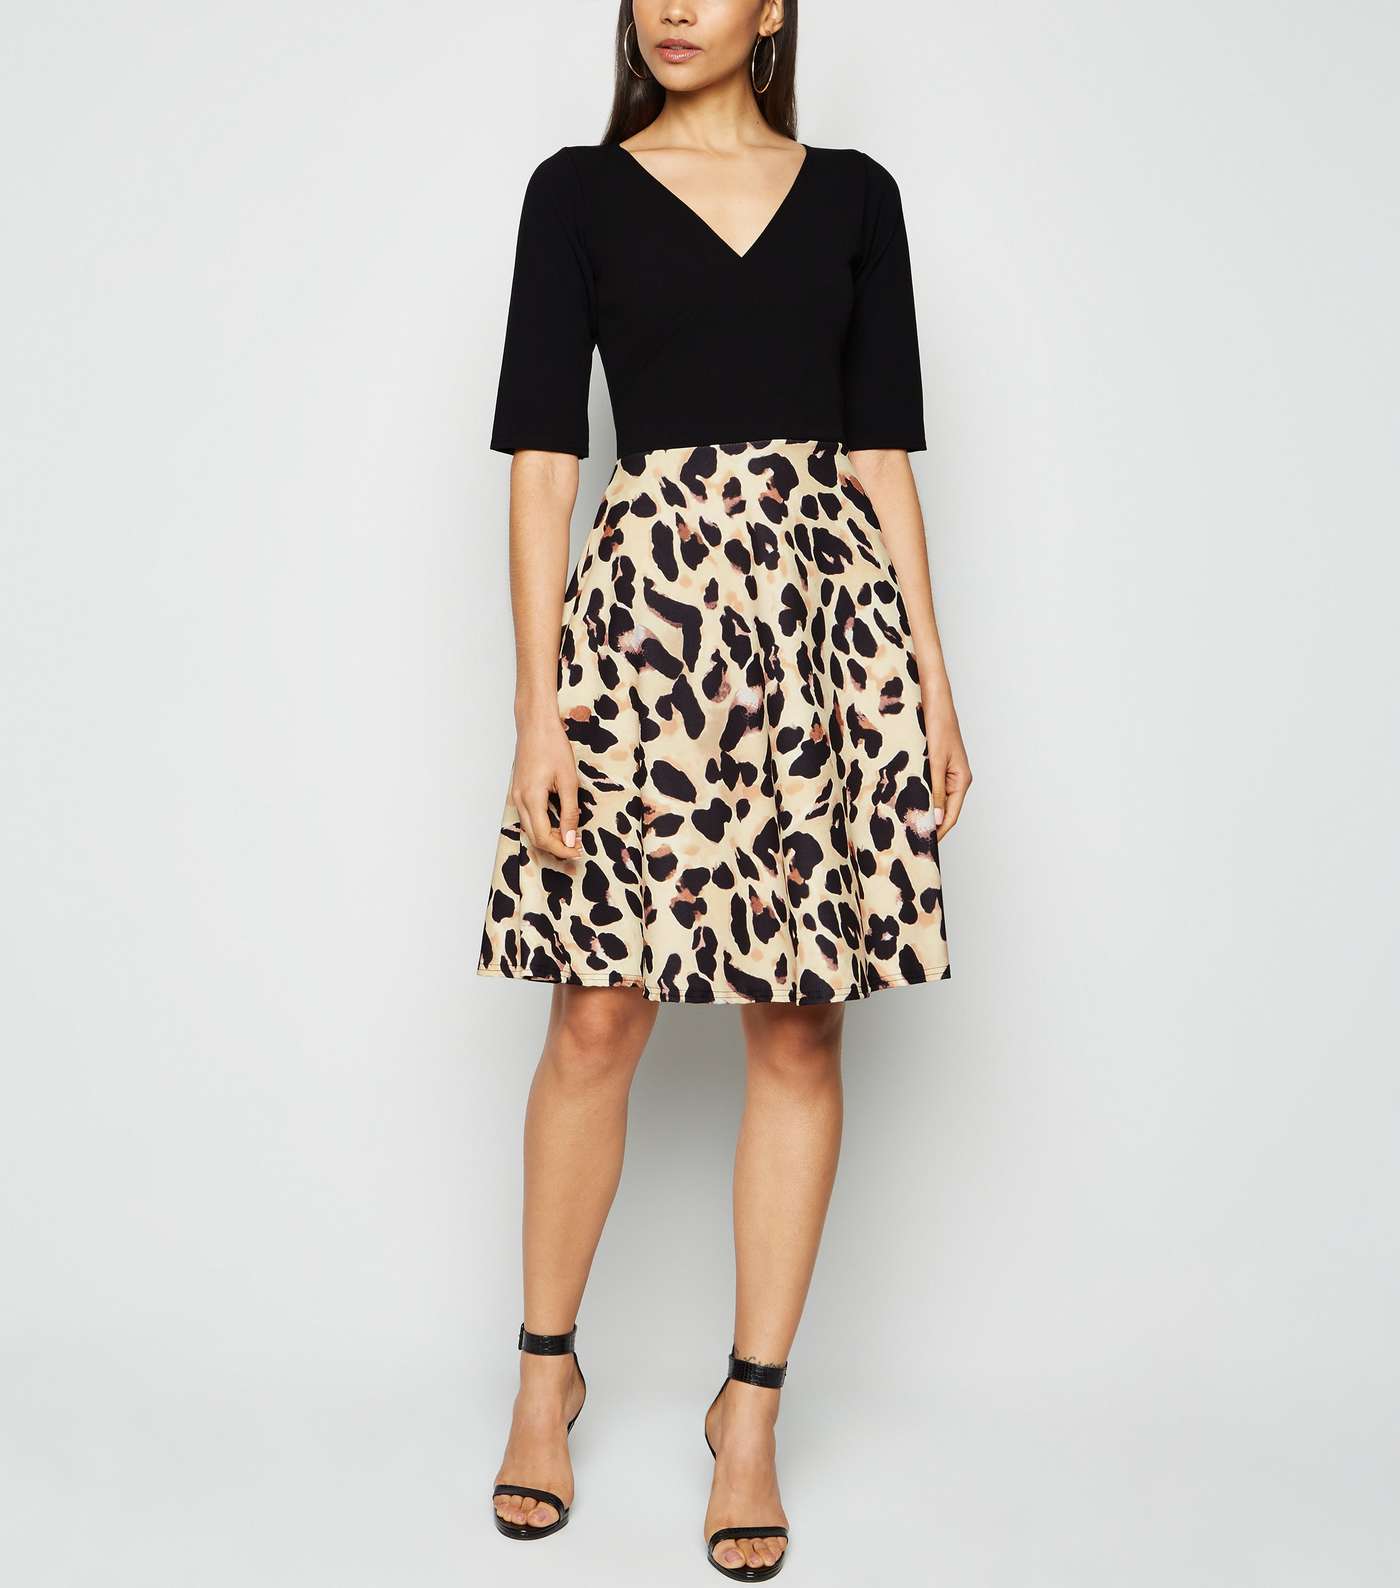 Missfiga Brown Leopard Print Skirt Skater Dress Image 2